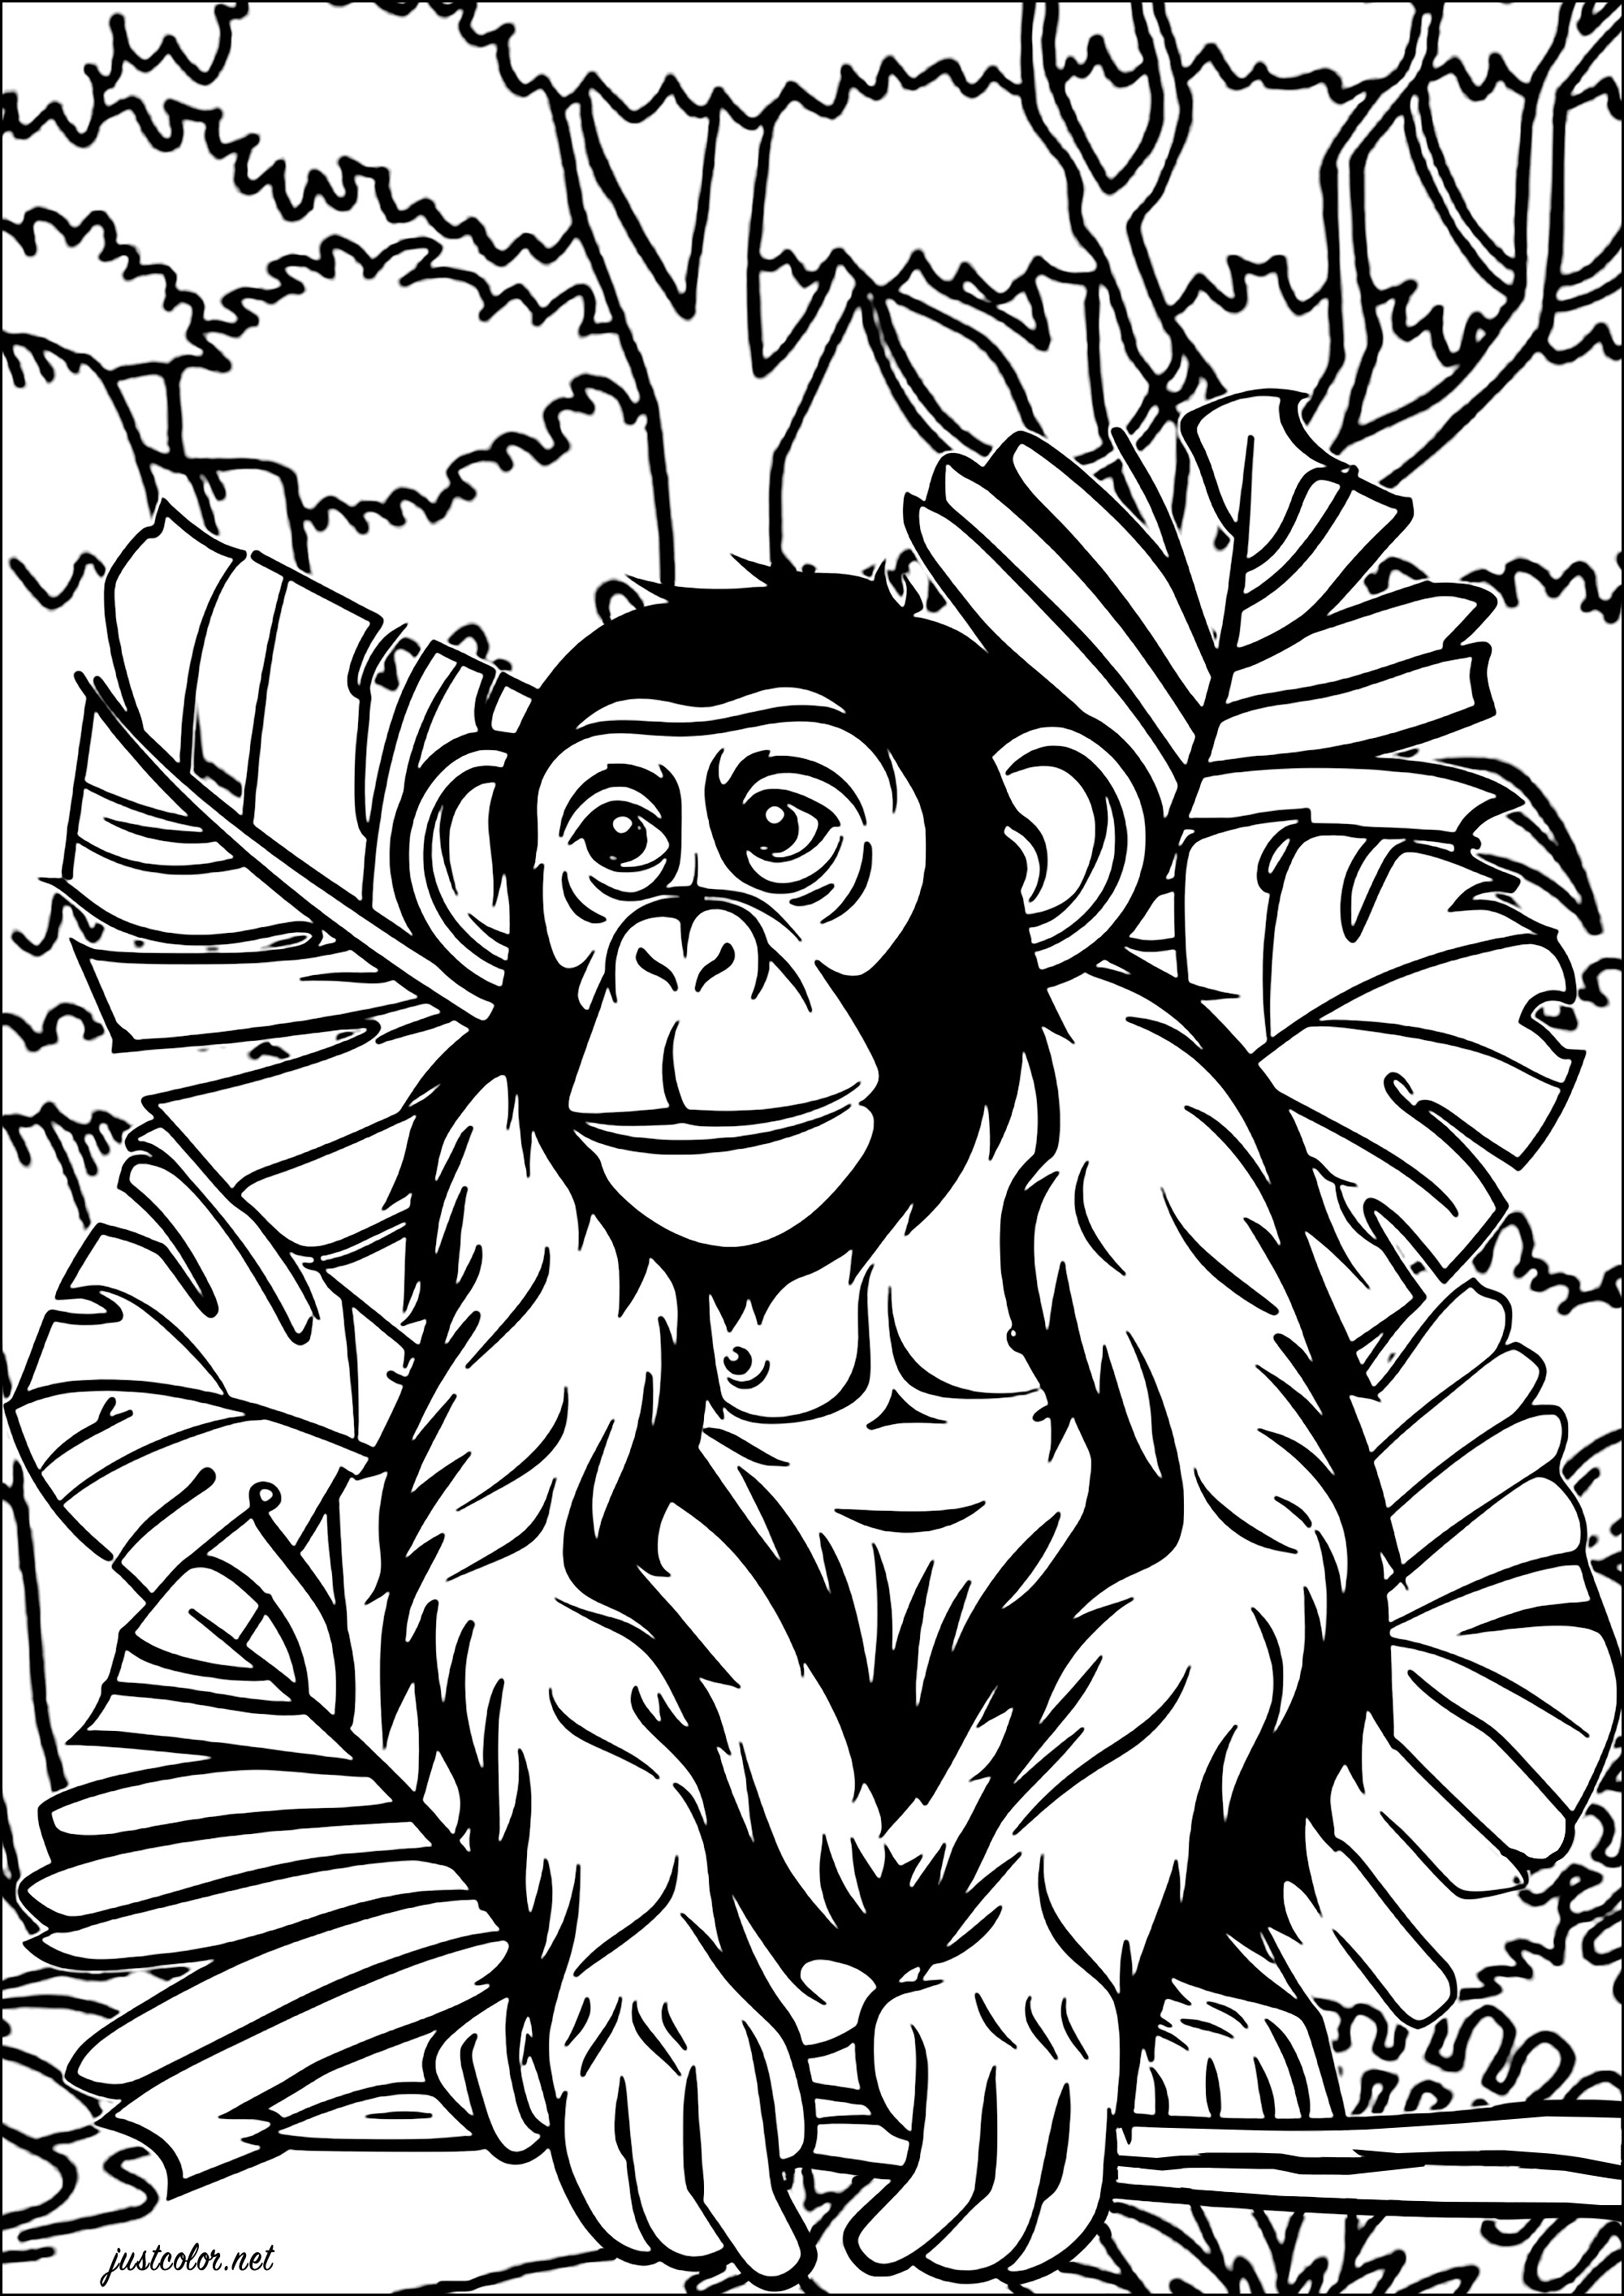 Scimpanzé nella giungla. Un disegno molto realistico di uno scimpanzé da colorare, con grandi foglie e alberi giganti sullo sfondo.